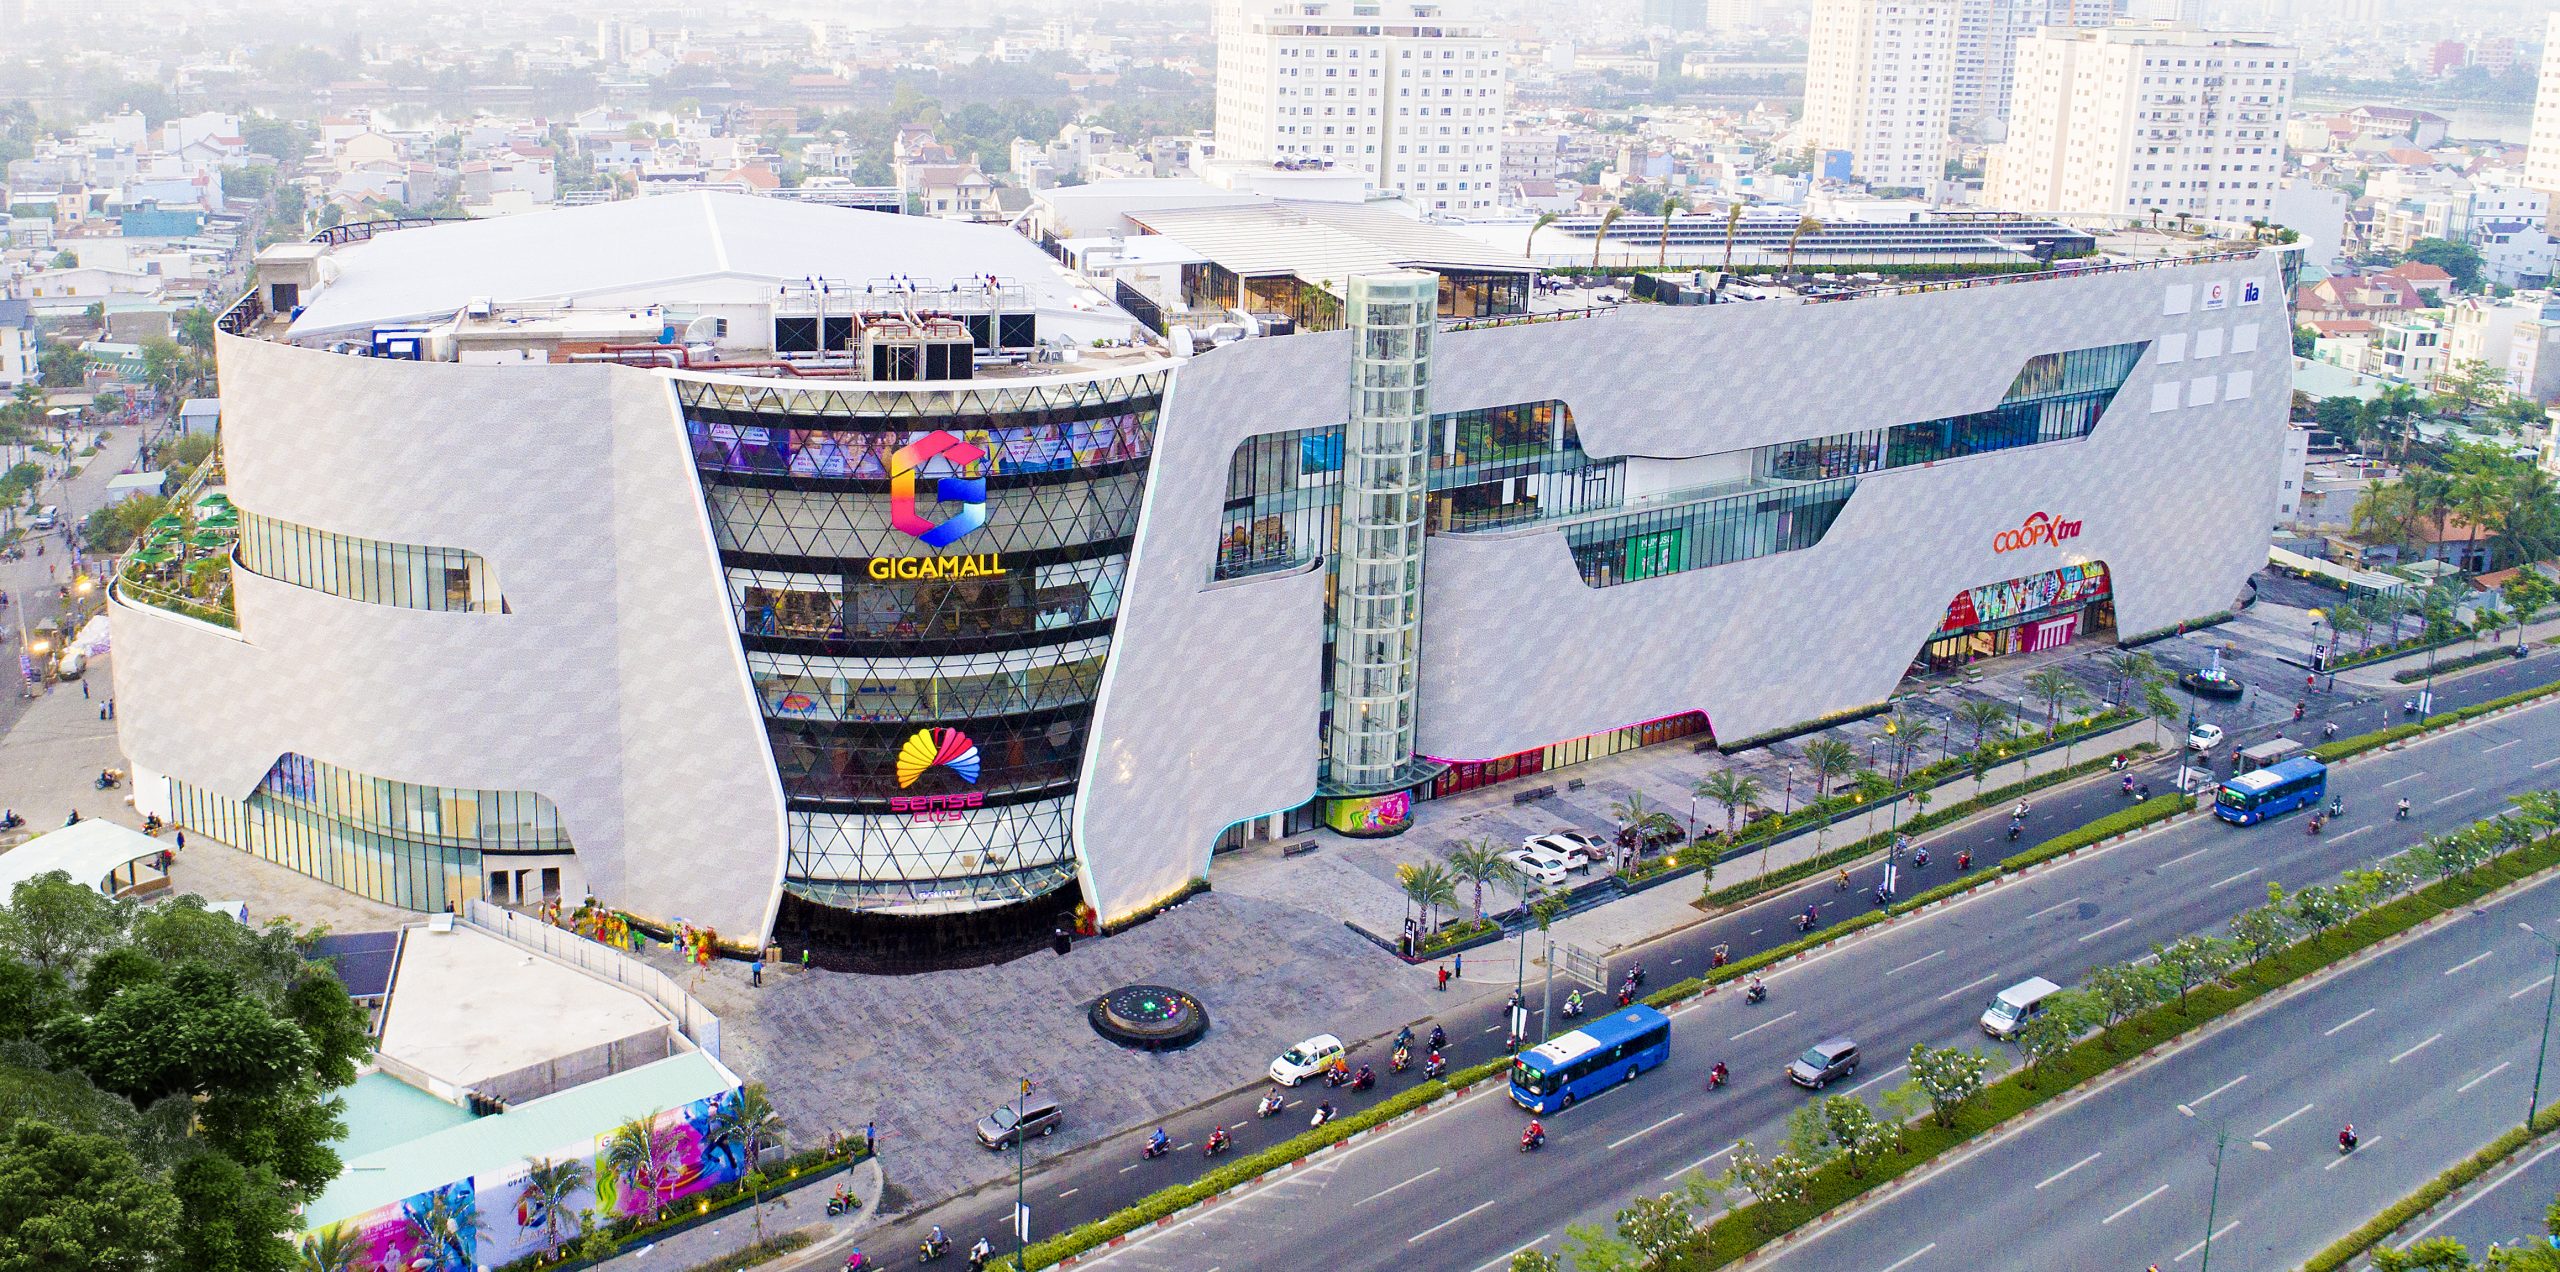 Trung tâm thương mại Giga Mall trên đường Phạm Văn Đồng, TP Thủ Đức, TP HCM